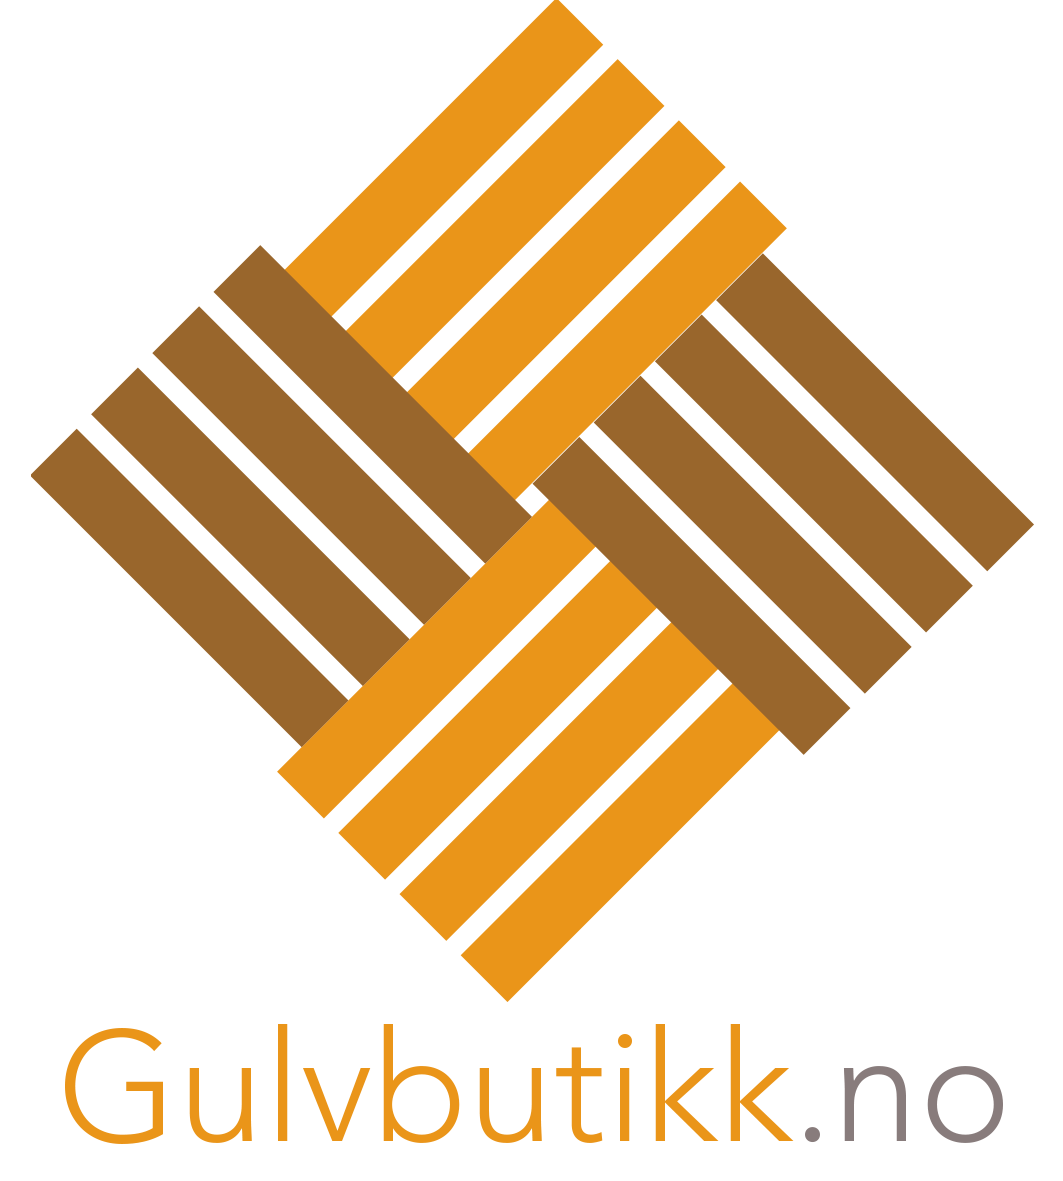 Gulvbutikk.no